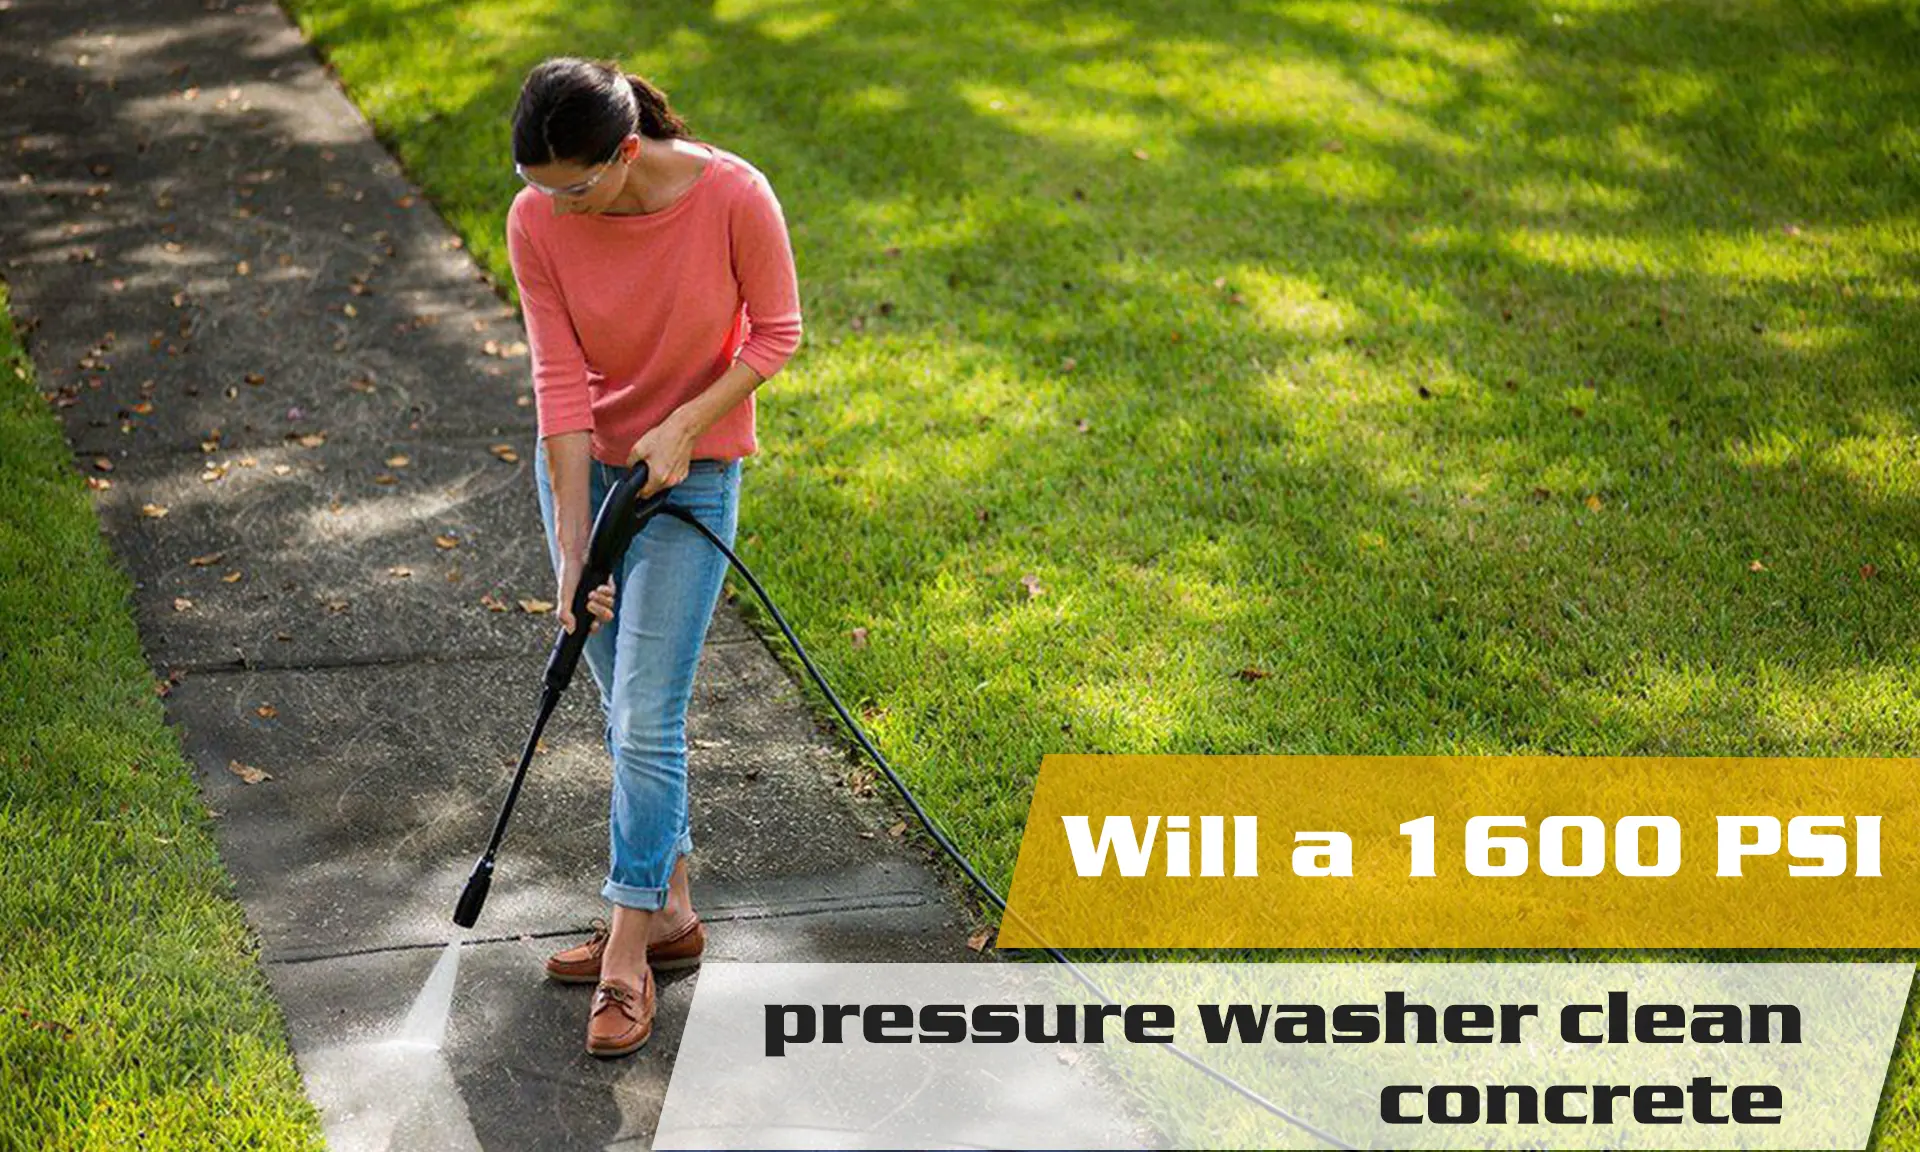 Will a 1600 PSI pressure washer clean concrete